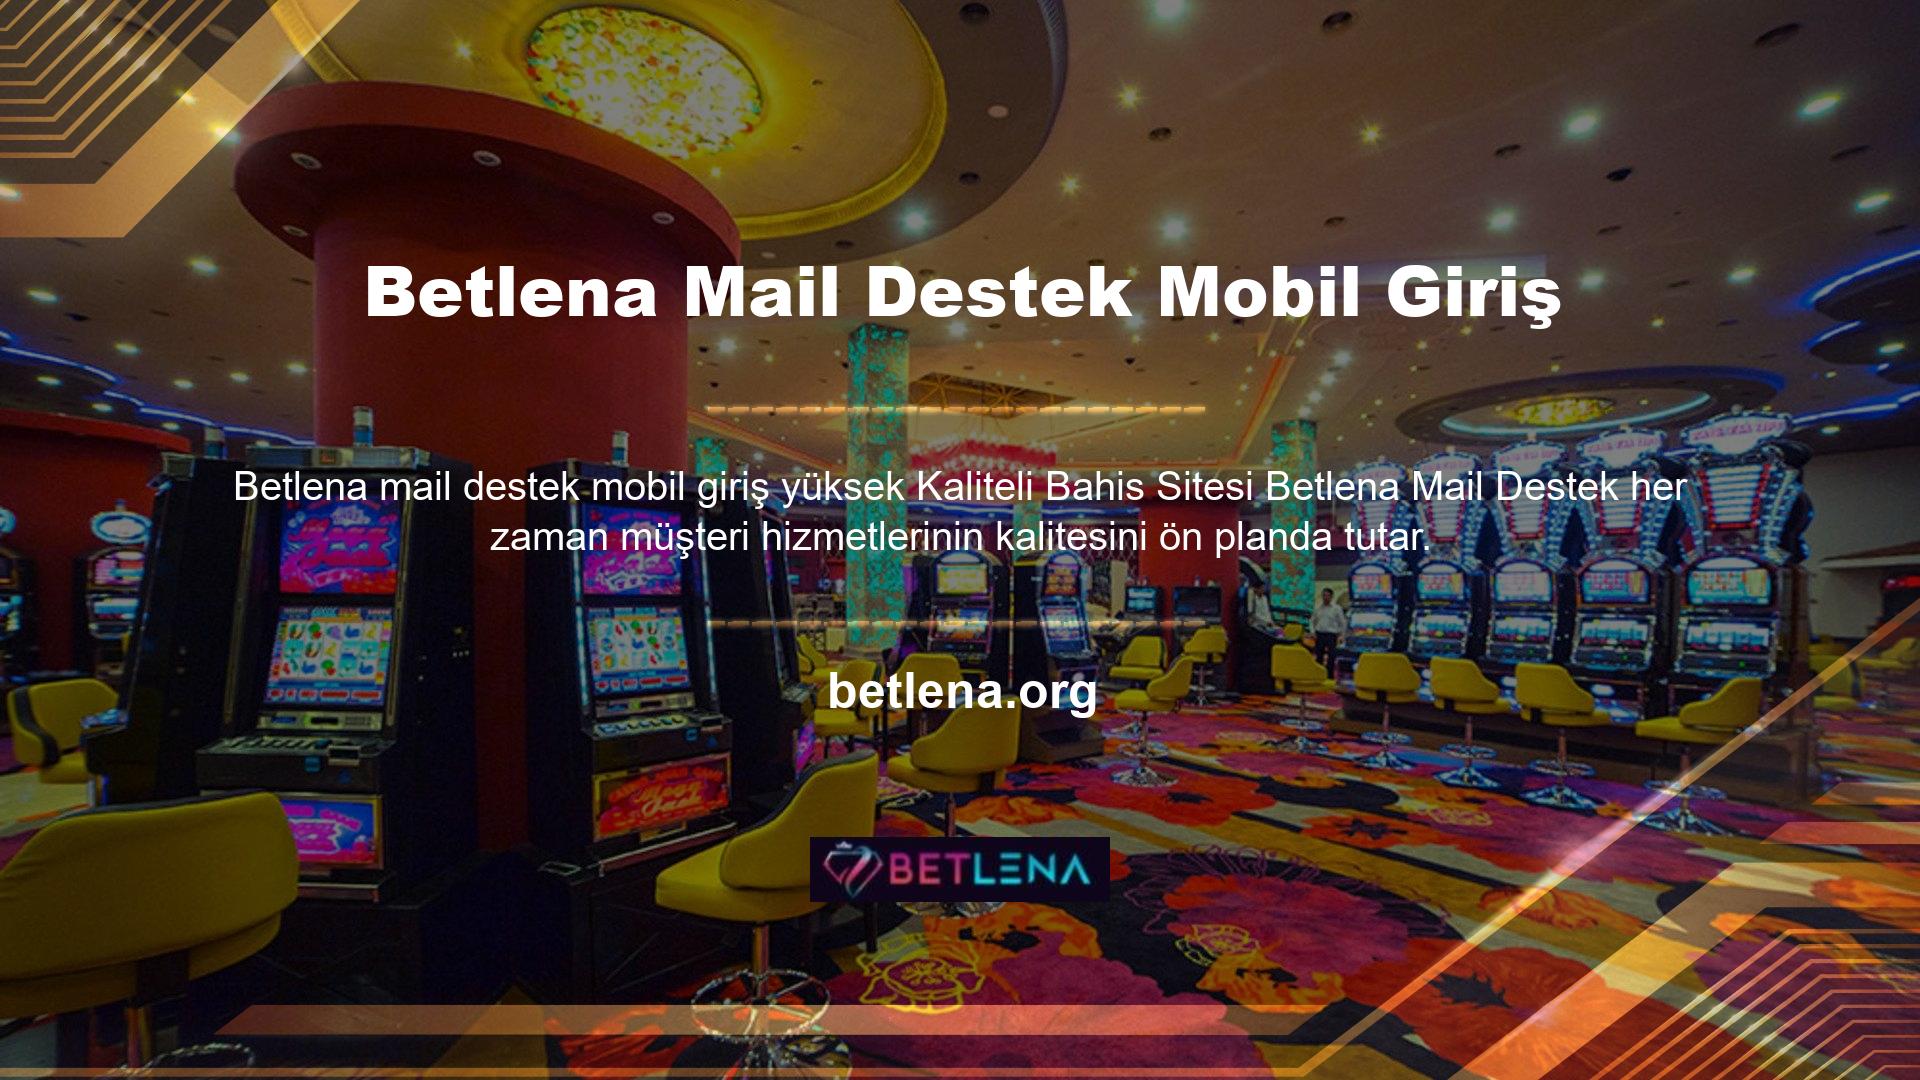 Betlena Mail Destek Mobil Giriş Bahis Sitesi, bahisçilerin sorularına ve etkinliklerine anında cevap alabilecekleri bahis sitelerinden biridir